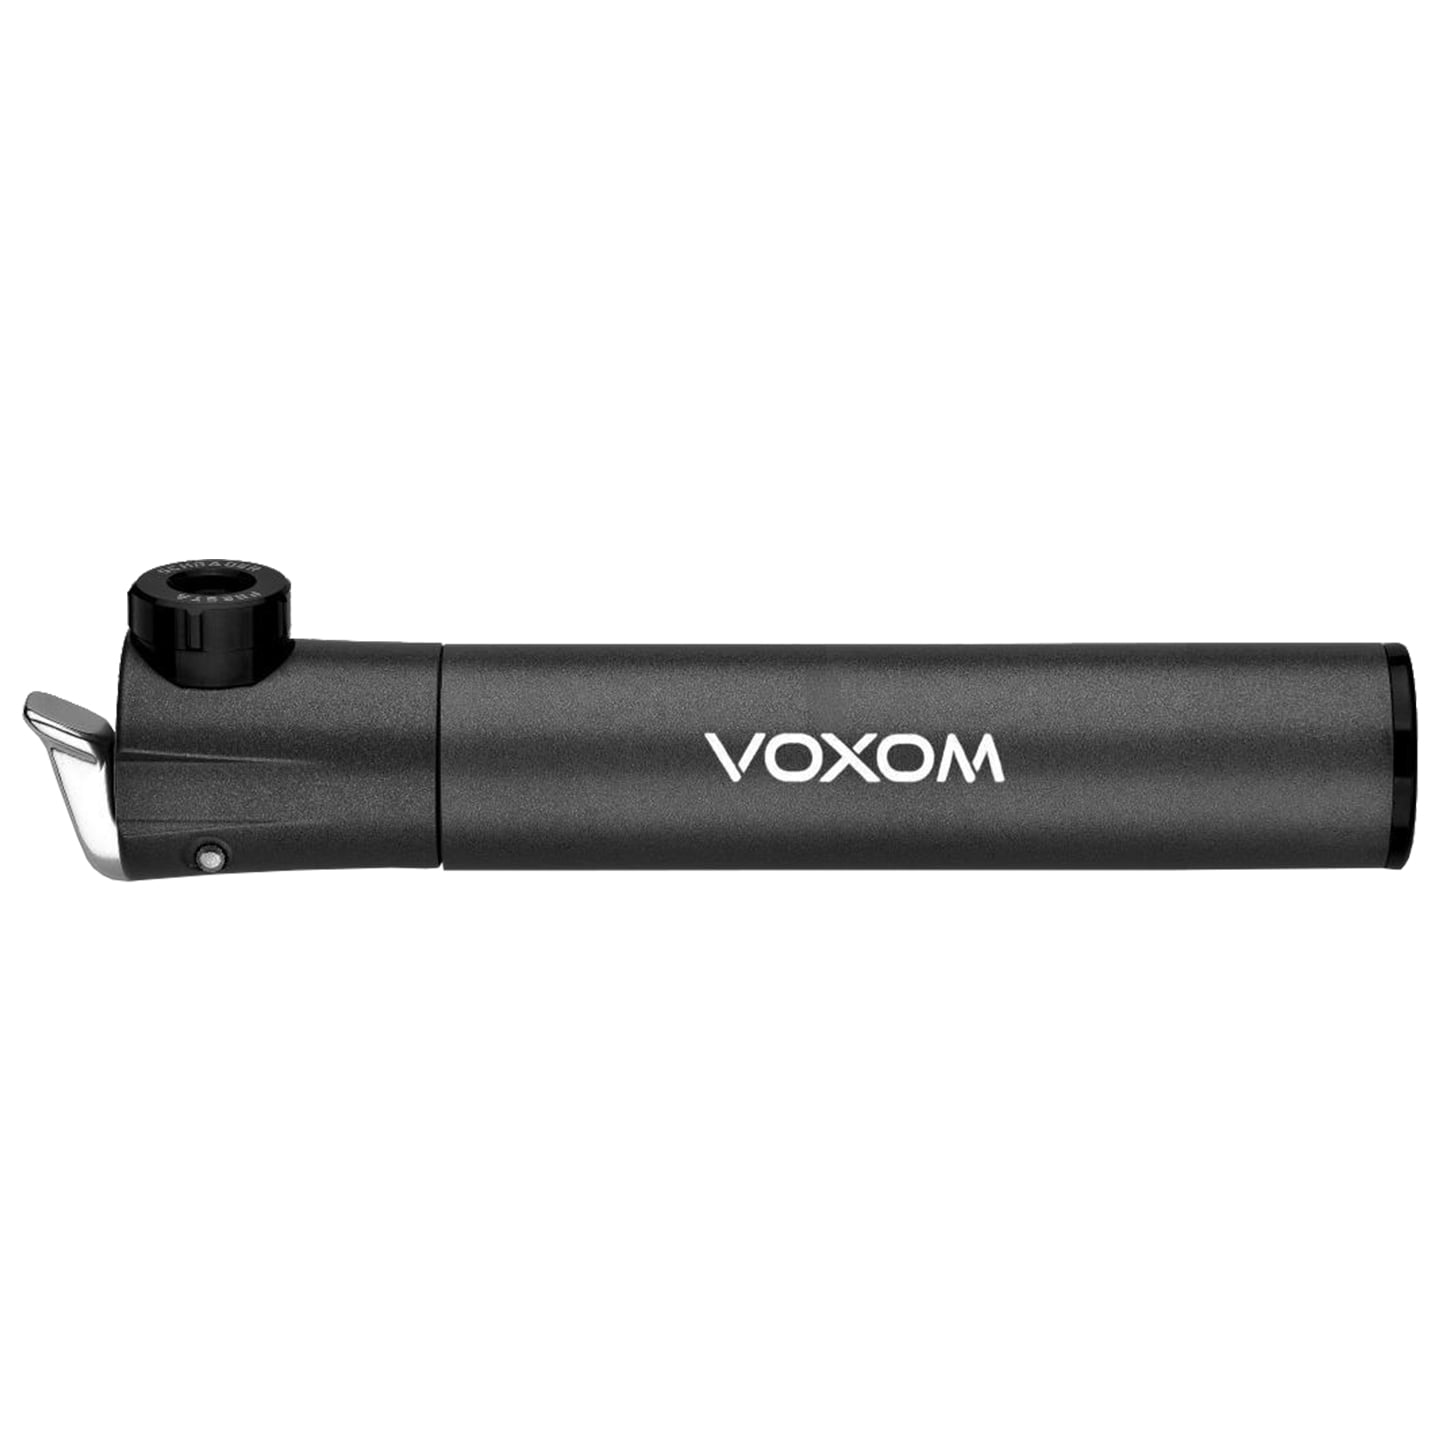 VOXOM Pu6 CNC Mini Pump Mini Pump, Bike pump, Bike accessories